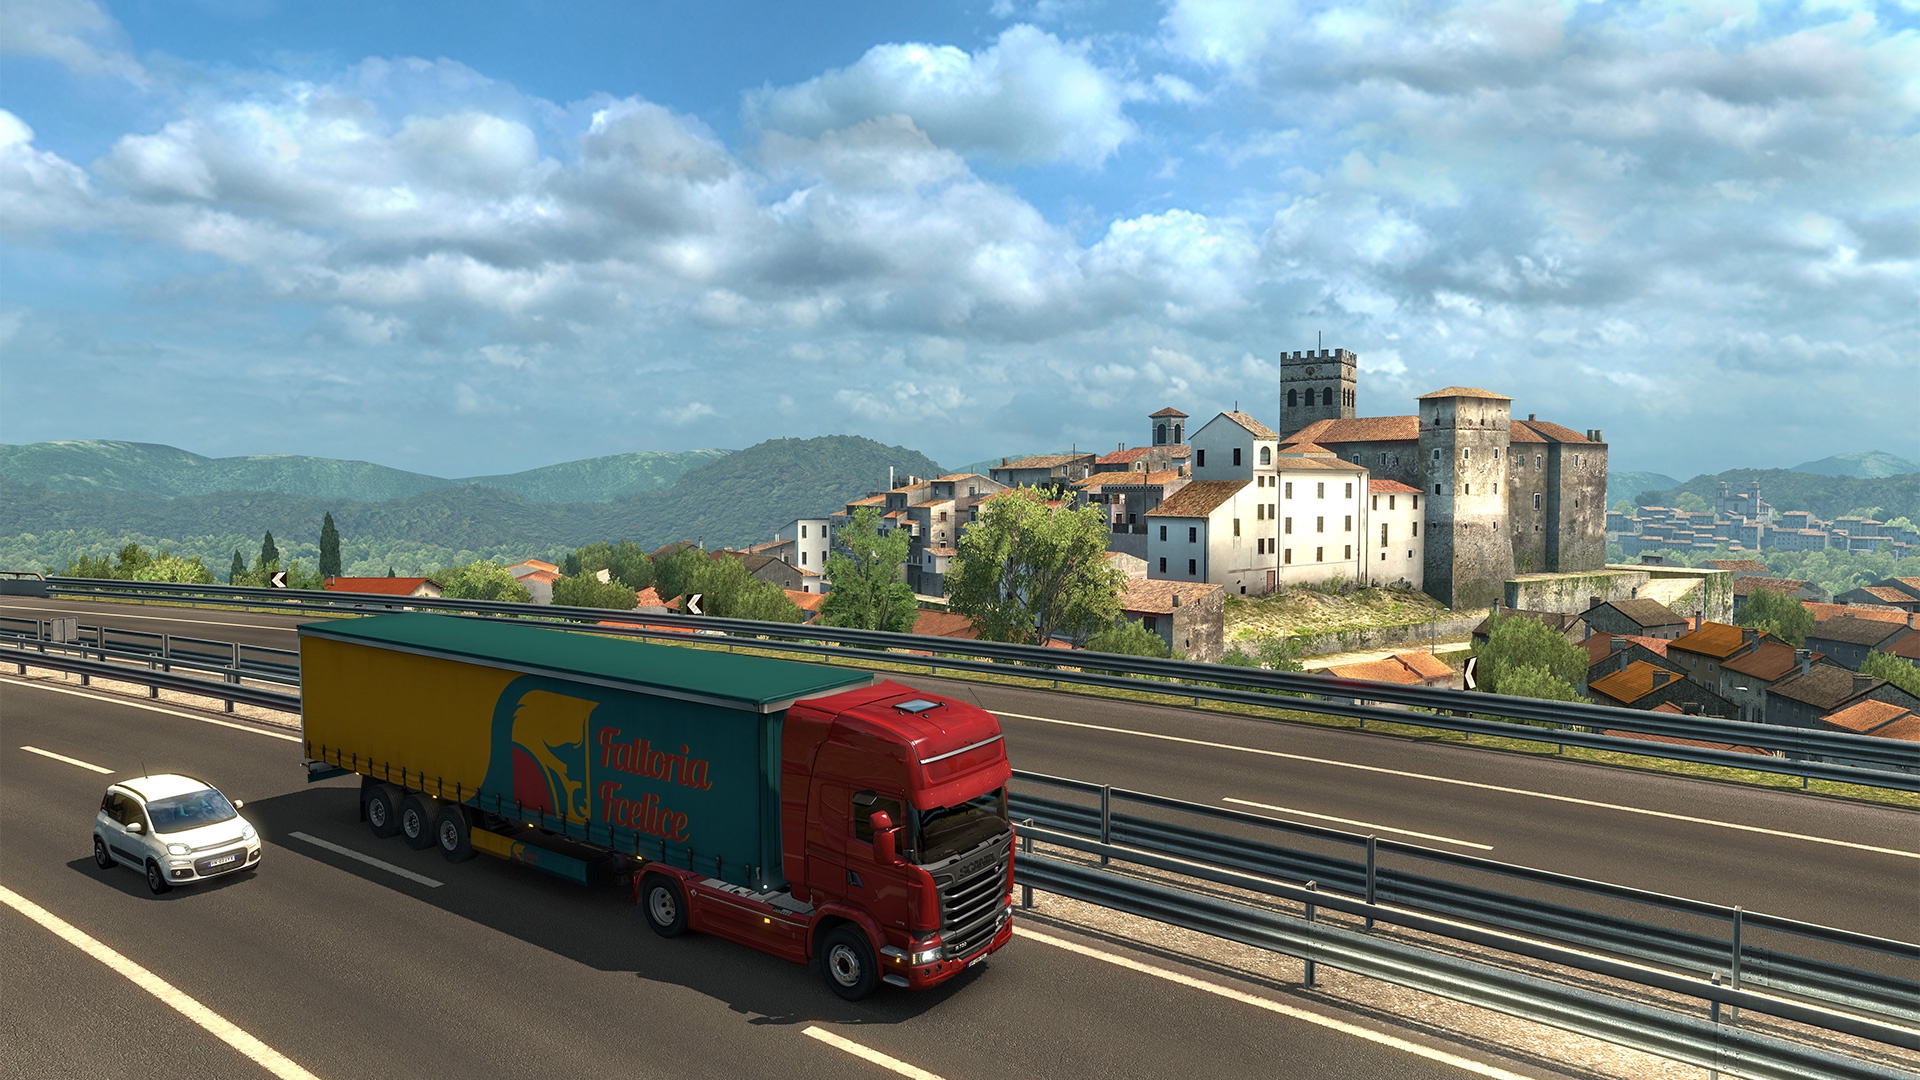 Euro Truck Simulator 2 review